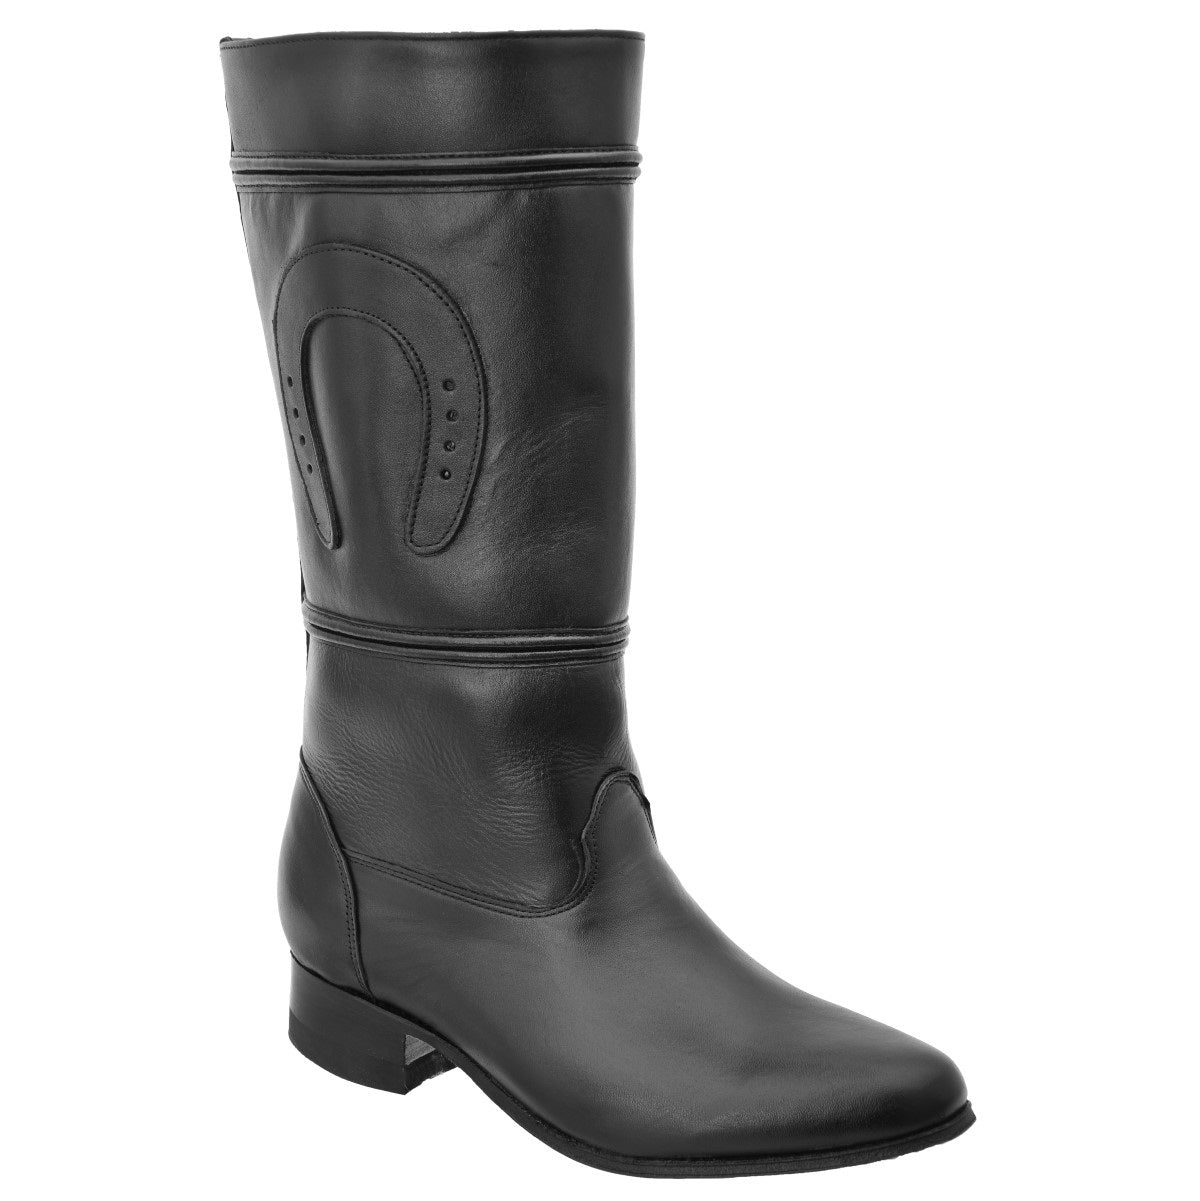 Botas Vaqueras TM-WD0512 - Western Boots